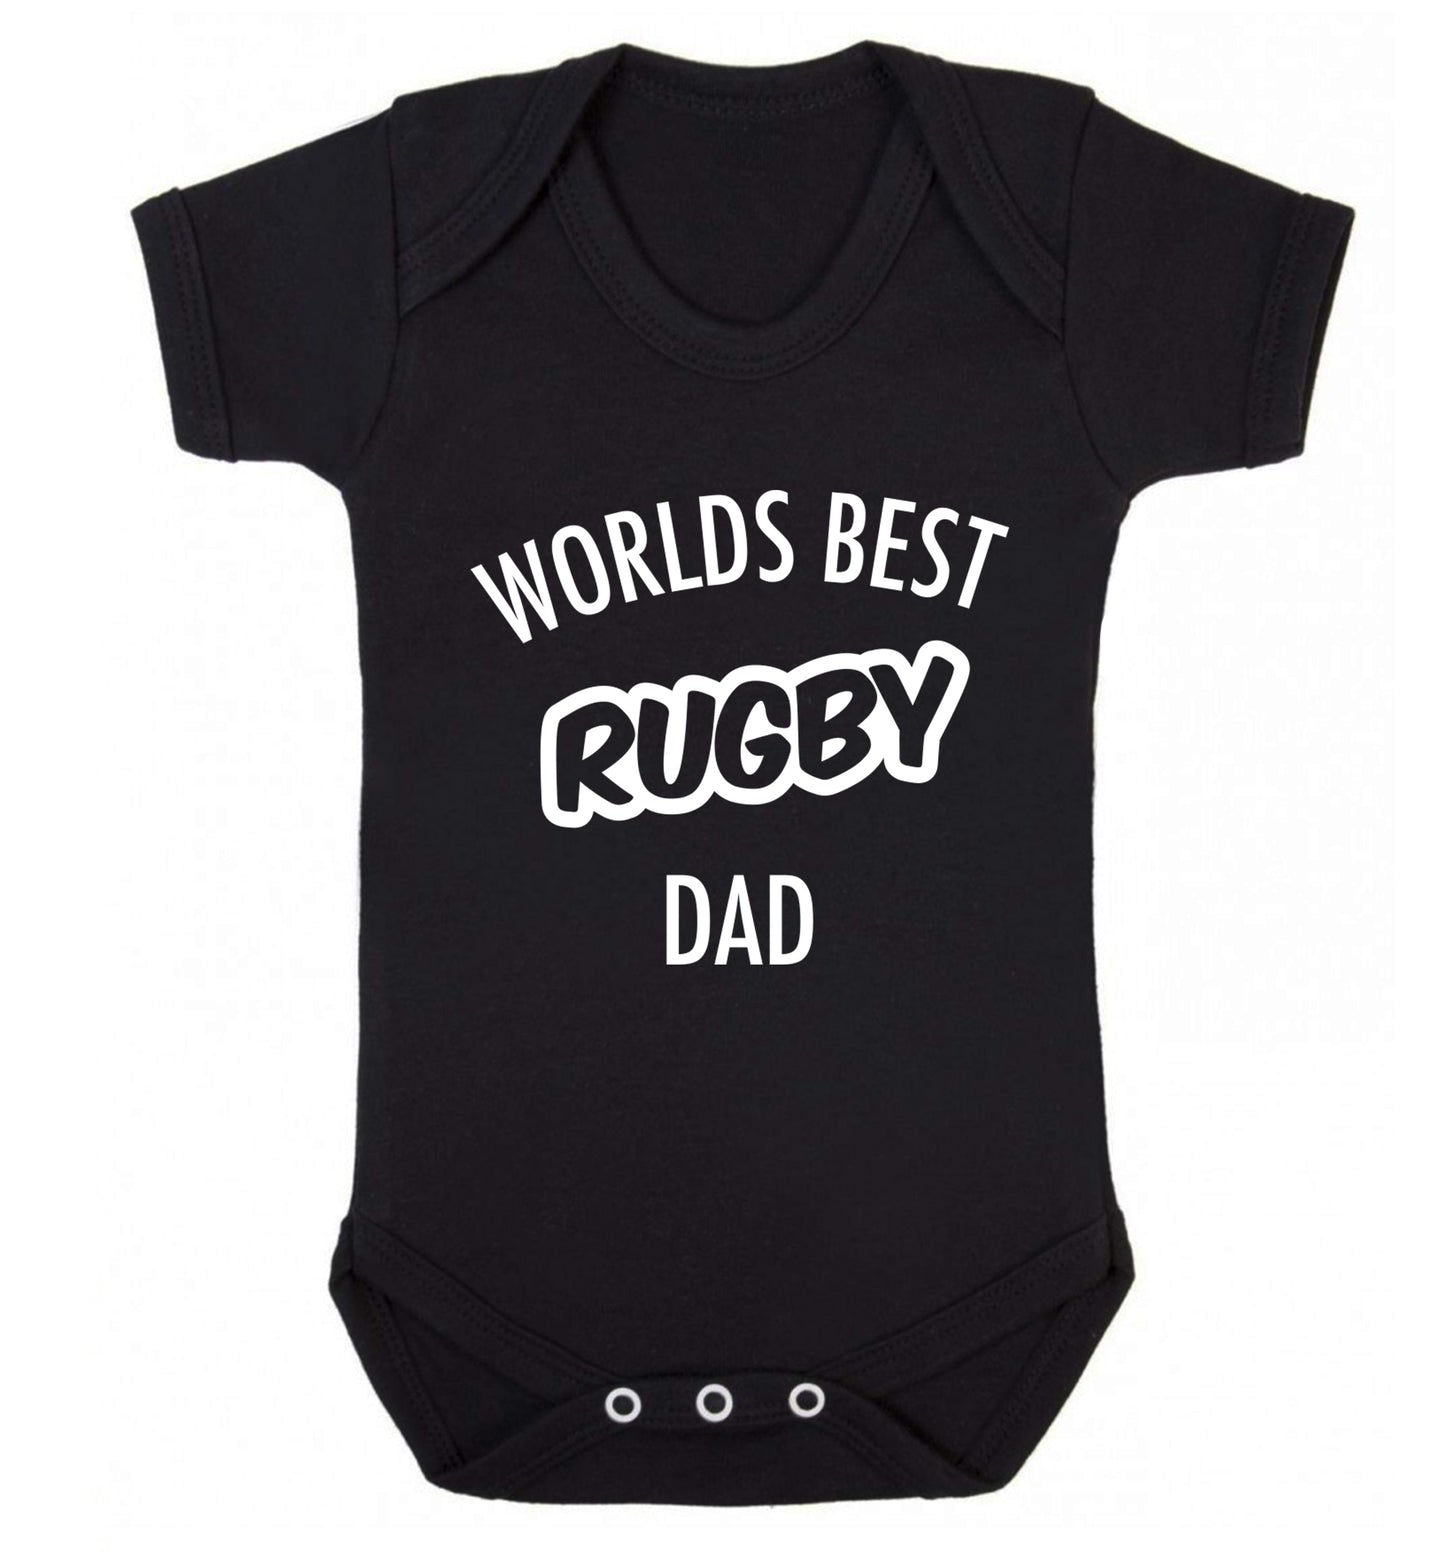 Worlds best rugby dad Baby Vest black 18-24 months